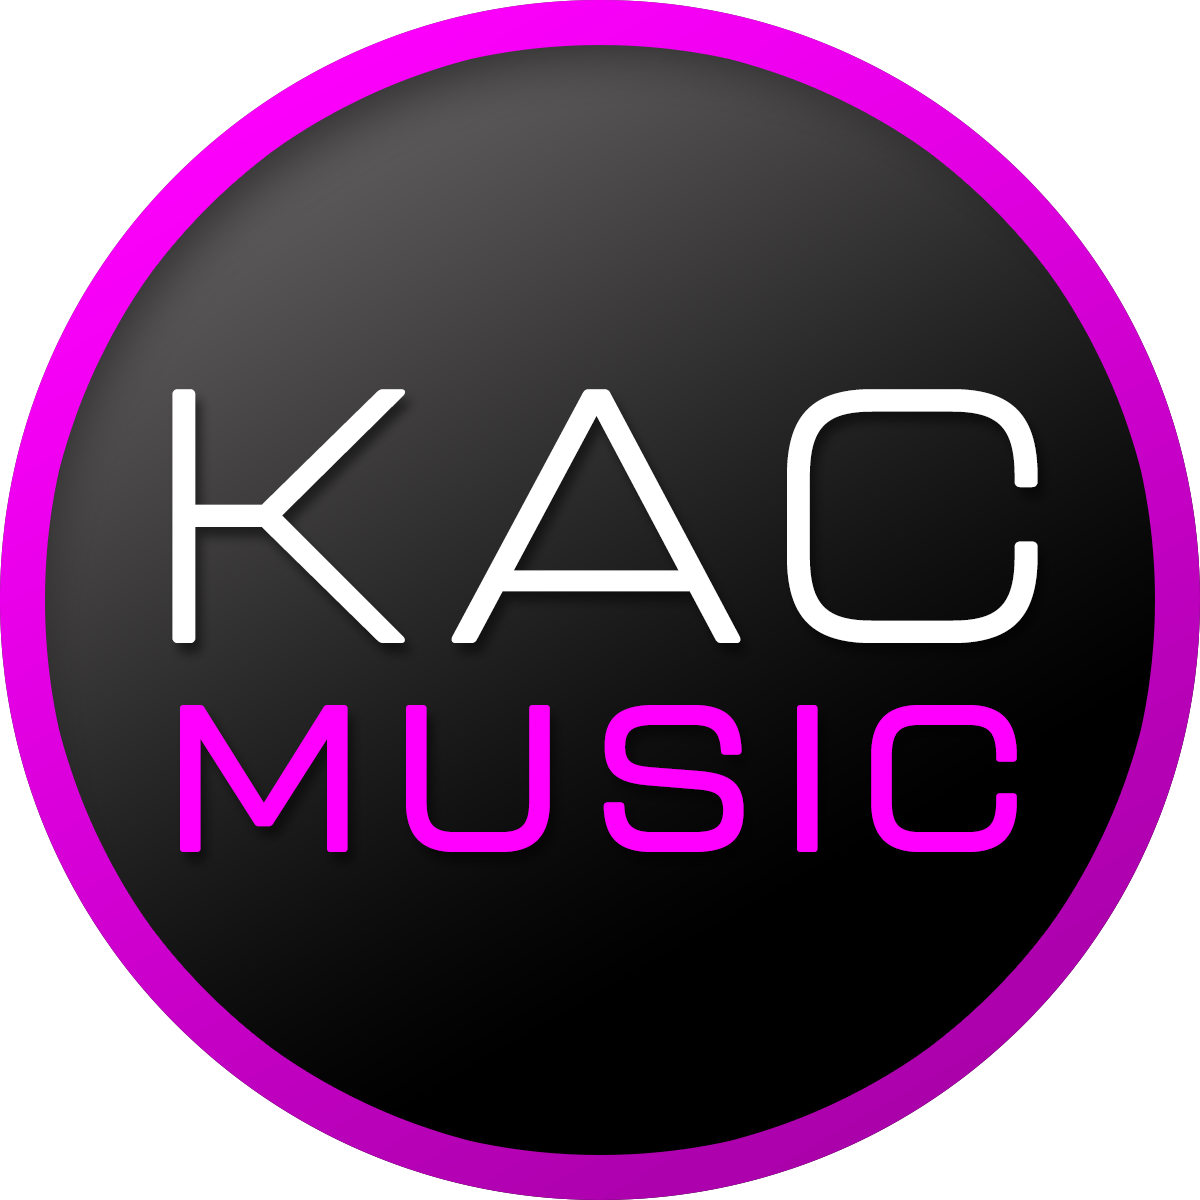 KAC Music